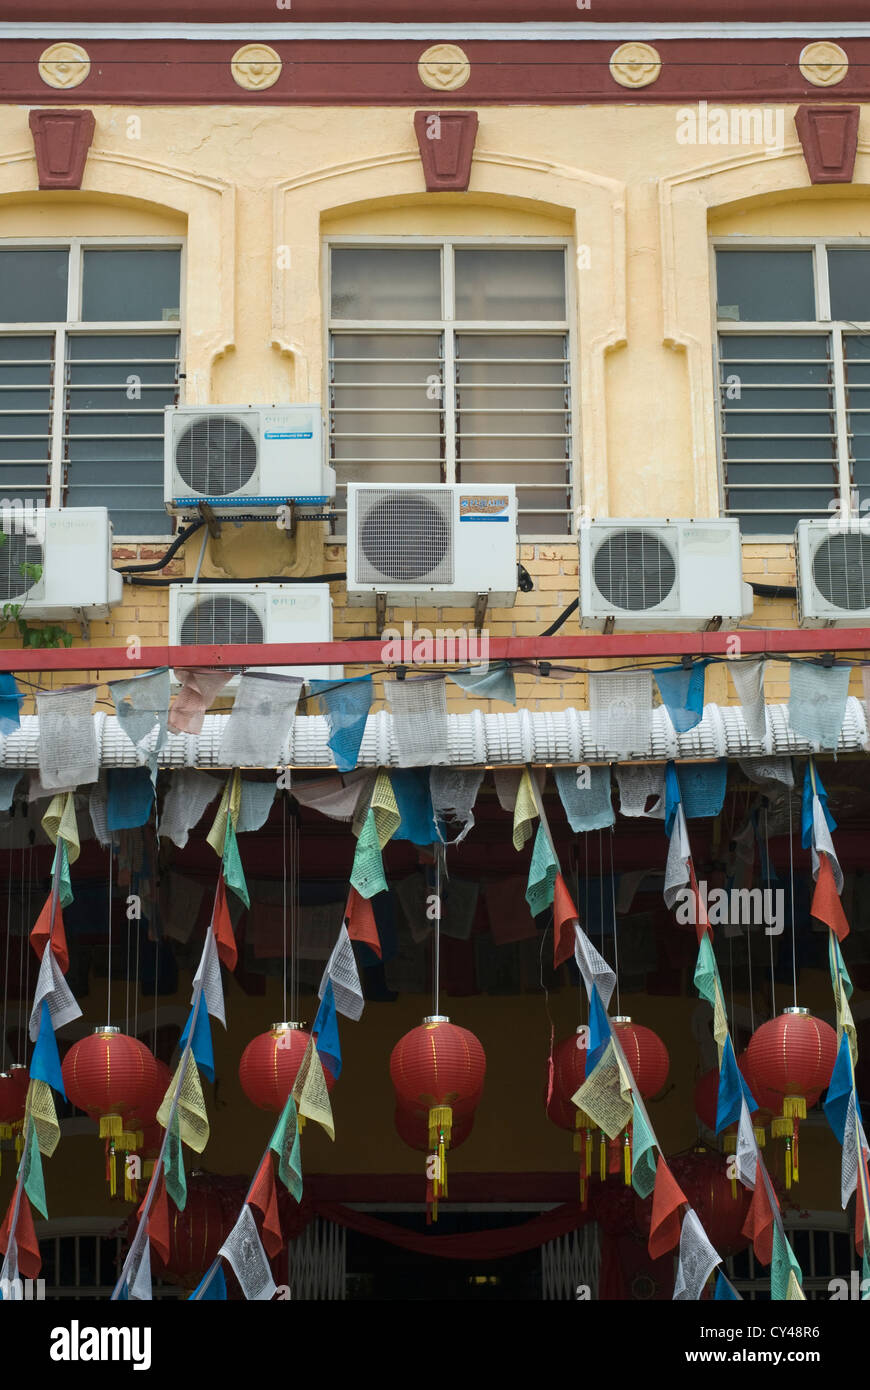 Le unità aria condizionata ornano la facciata di un tempio cinese di Penang, Malaysia Foto Stock